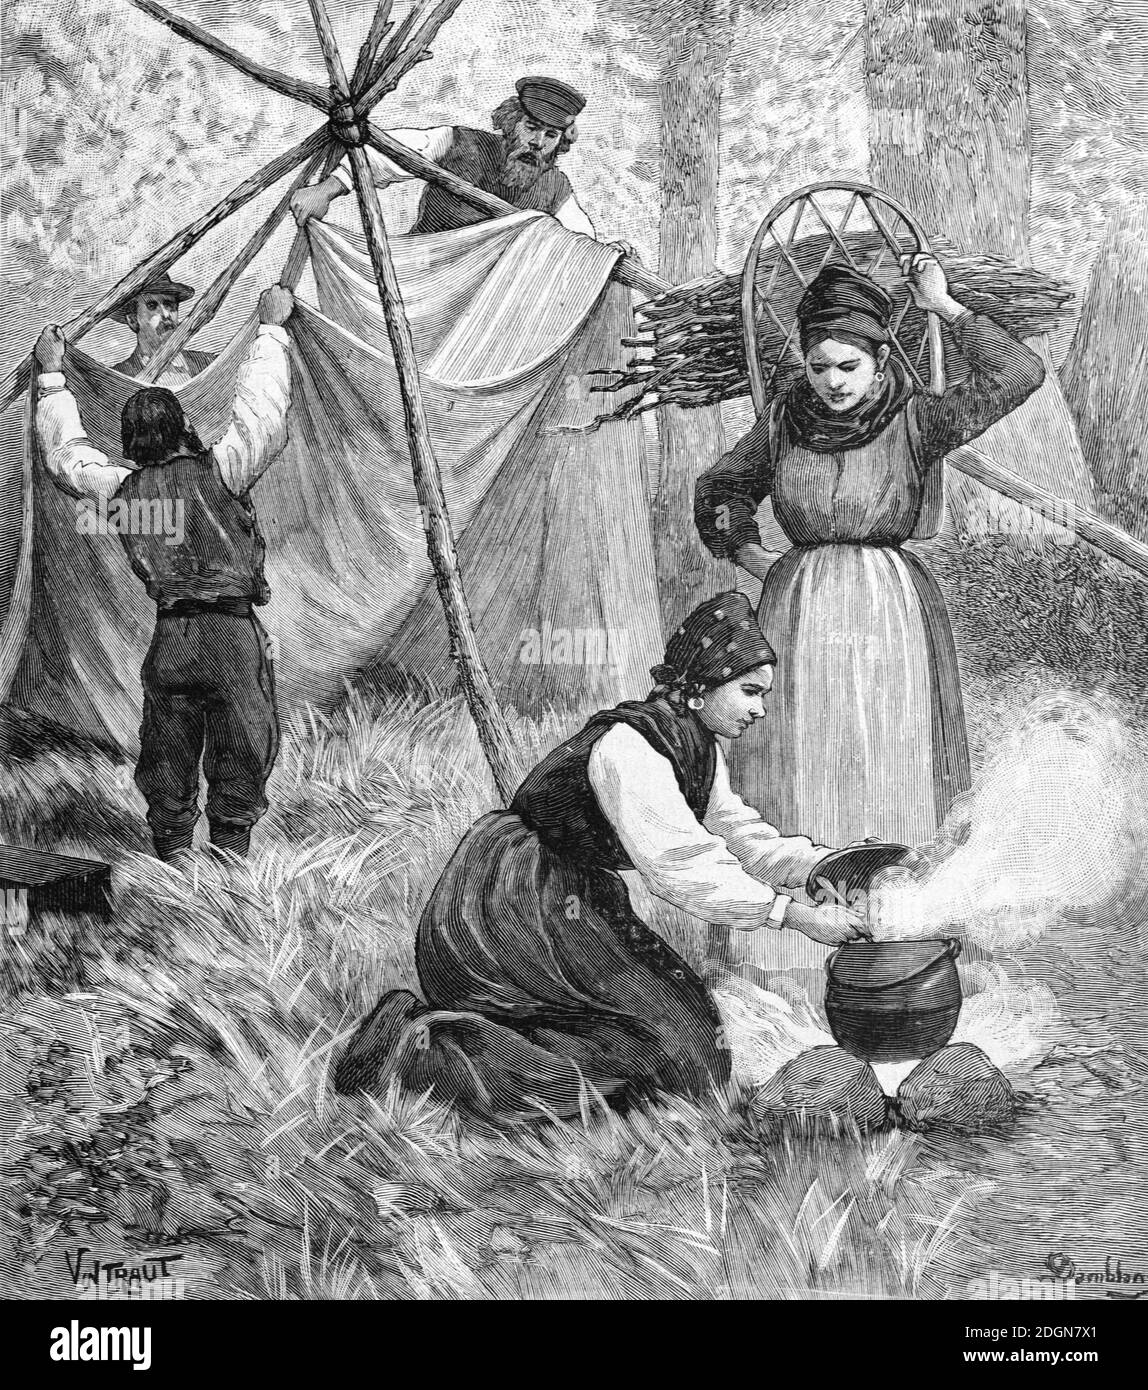 Sami semi-nomadi o Lapps si riuniscono intorno al campo di fuoco in campo O accampamento in Lapponia o Sapmi nell'Artico scandinavo Regione (englr 1895 Vintraut-Domblanc) incisione o illustrazione d'epoca Foto Stock